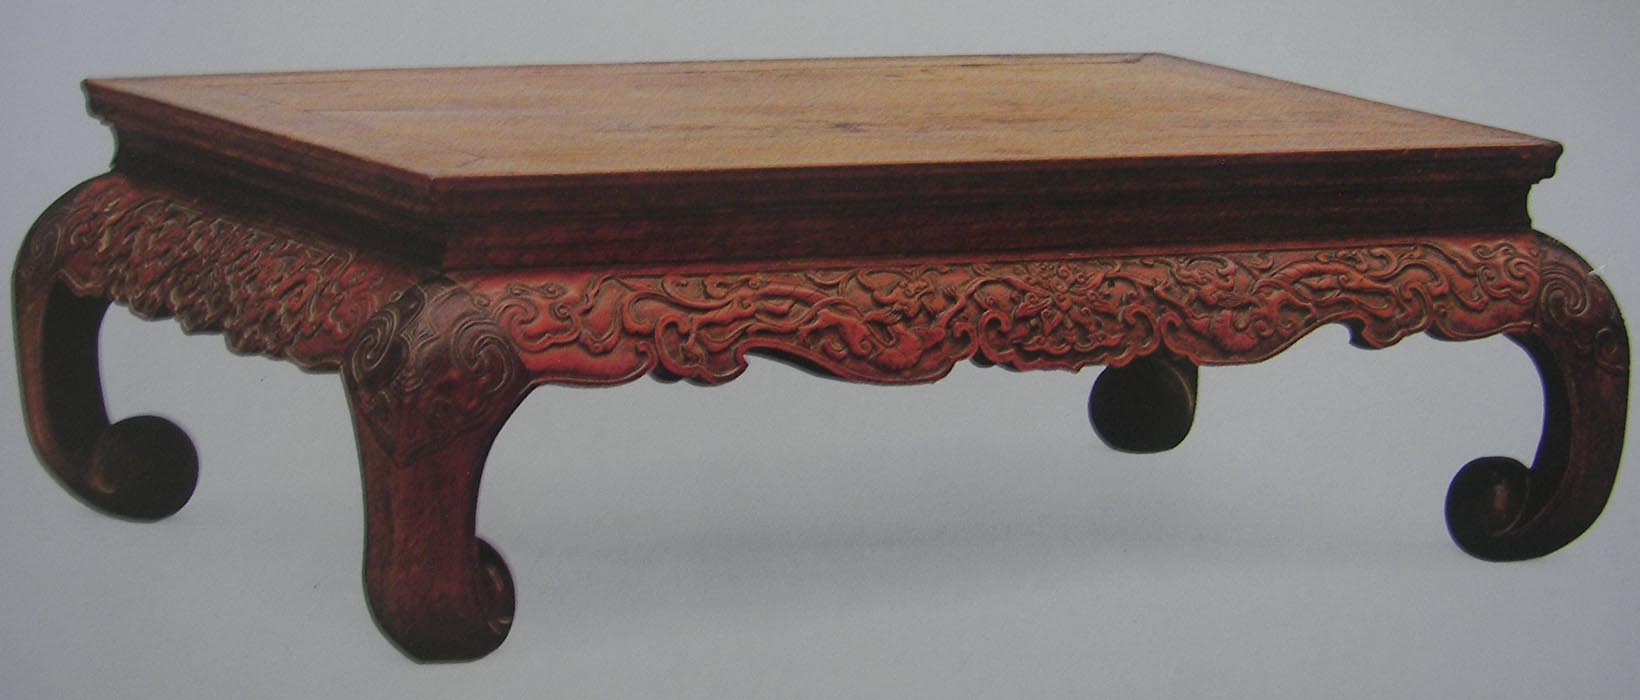 Chinese Rosewood Narrow Kang Table